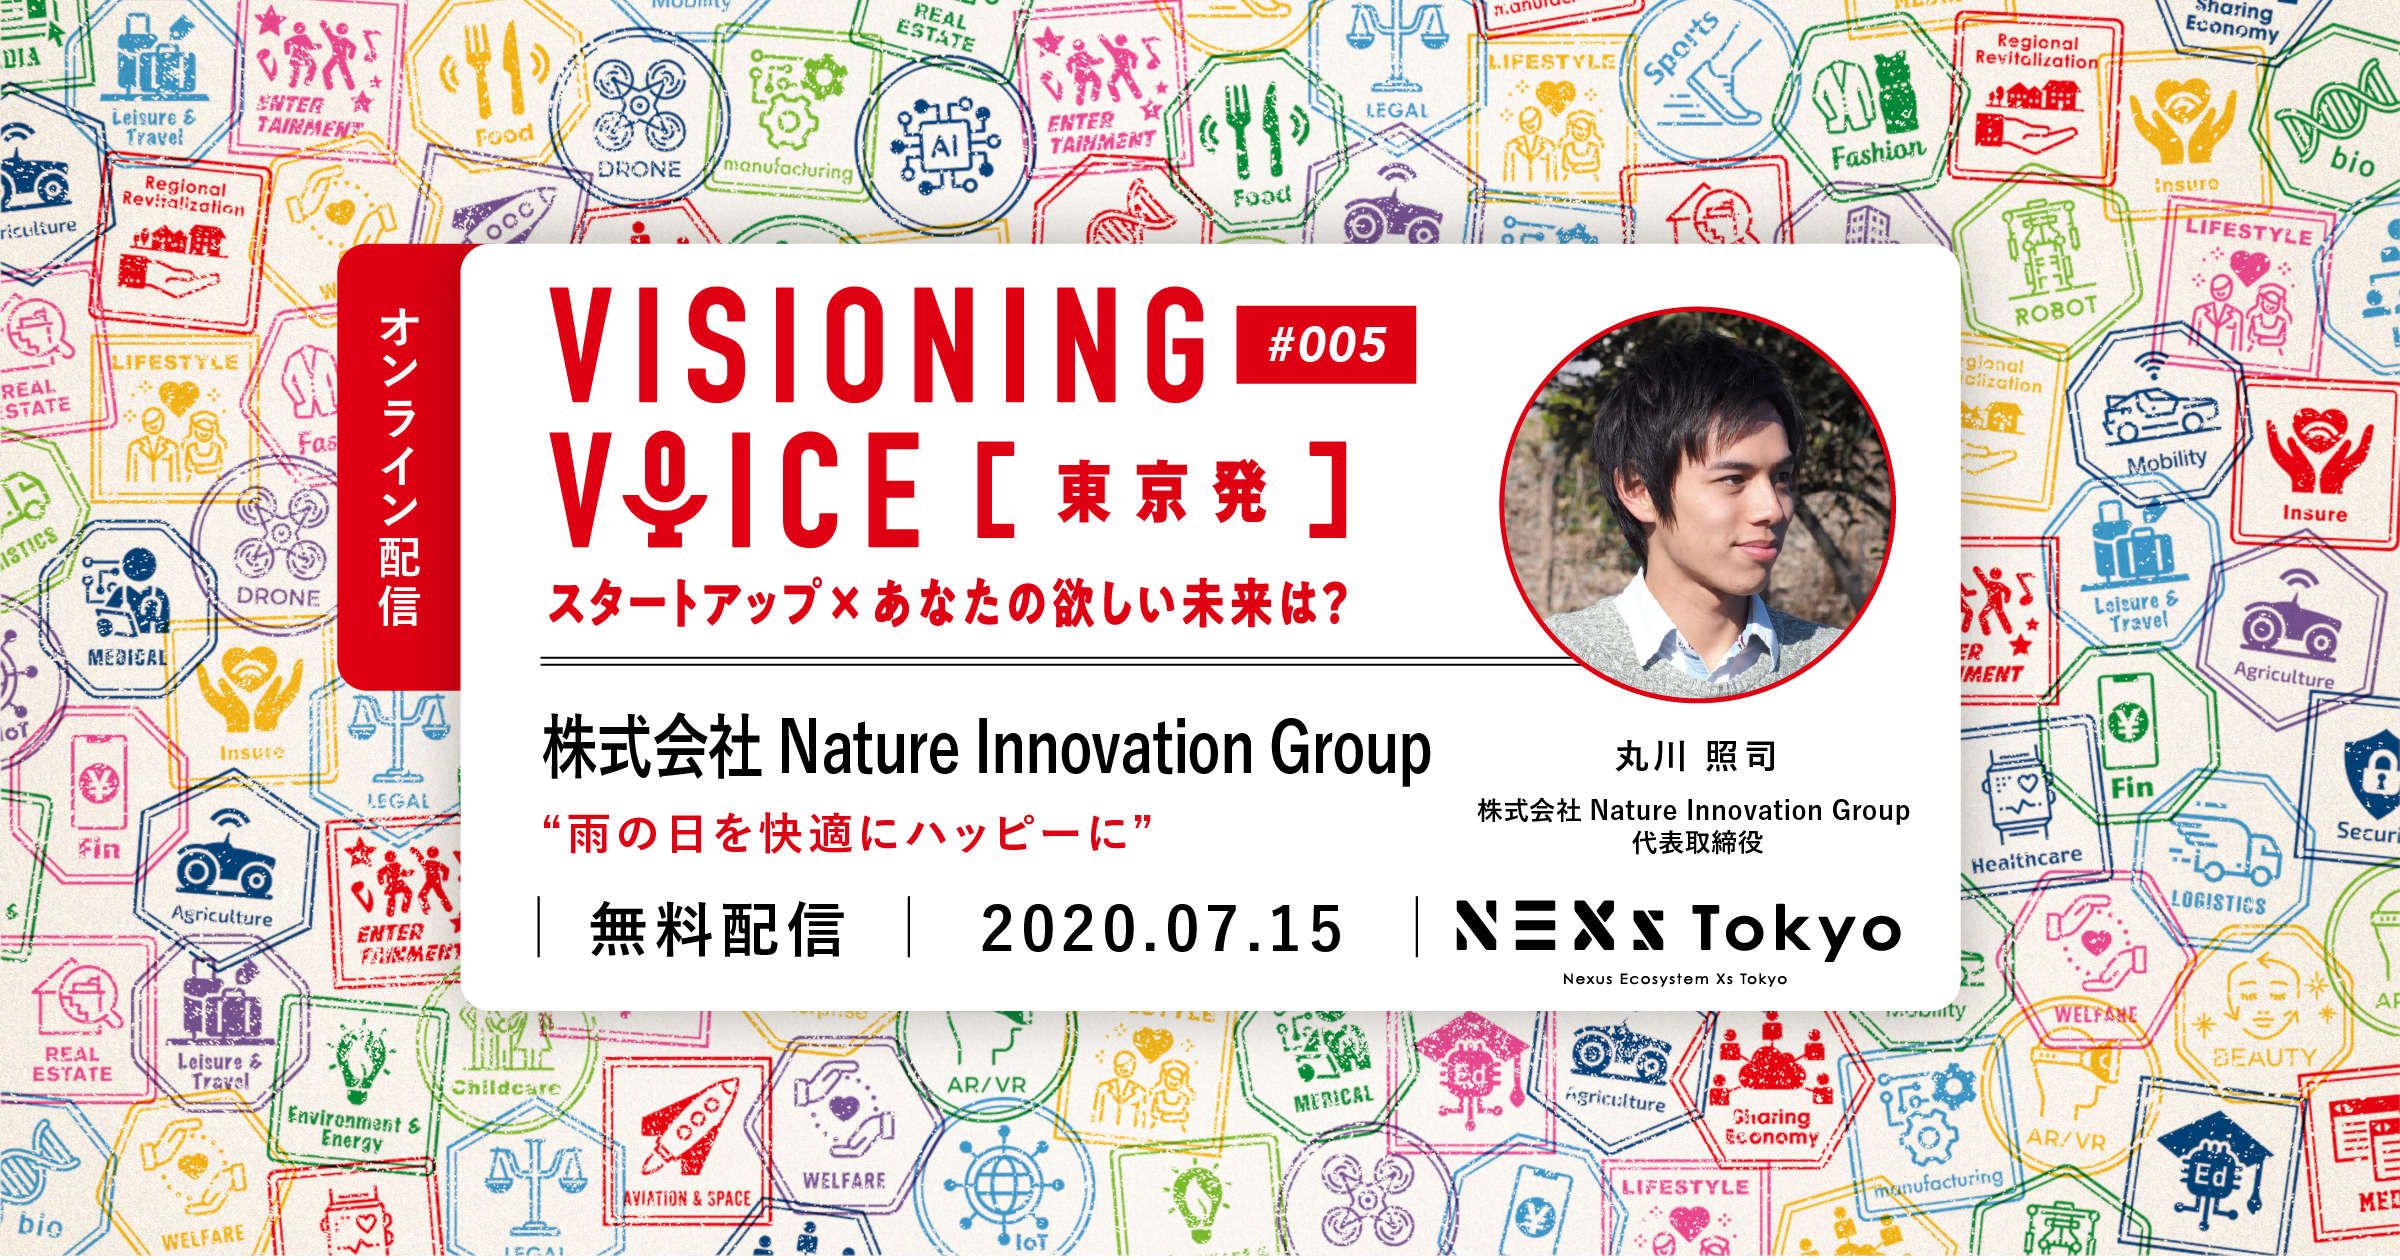 【配信】visioning voice #5 Nature Innovation Group「雨の日を快適にハッピーに」